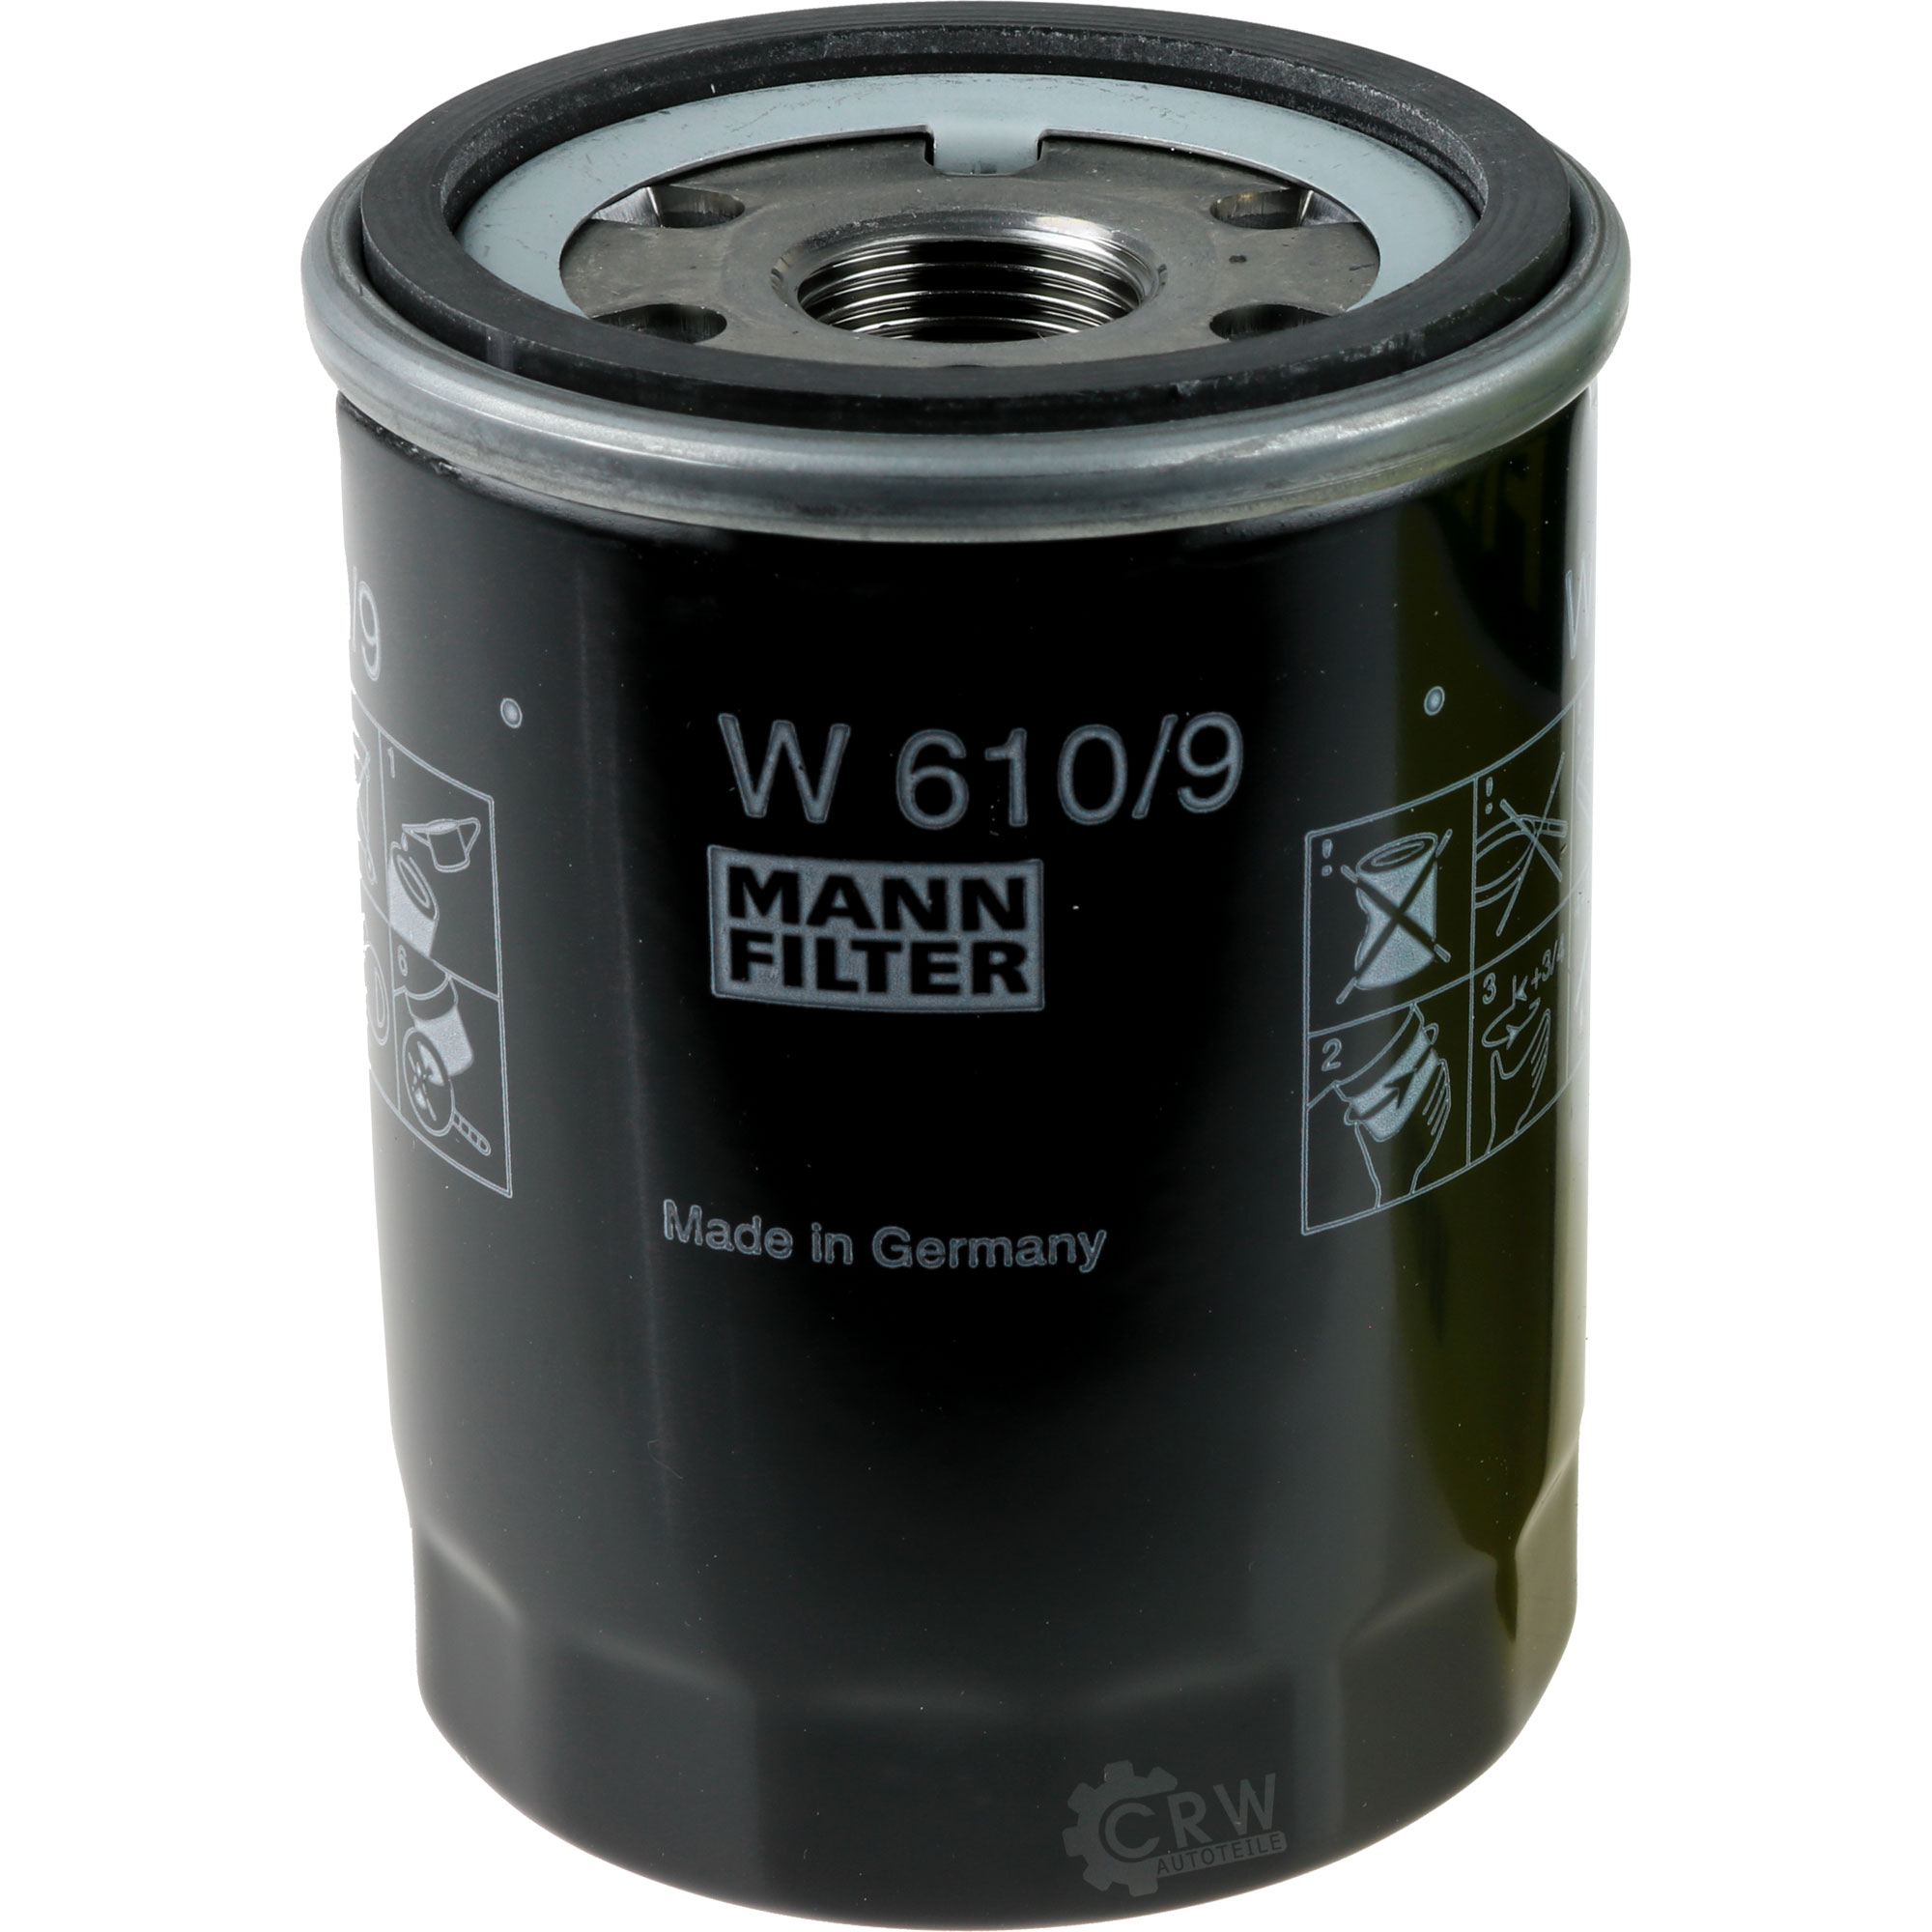 MANN-FILTER Ölfilter W 610/9 Oil Filter